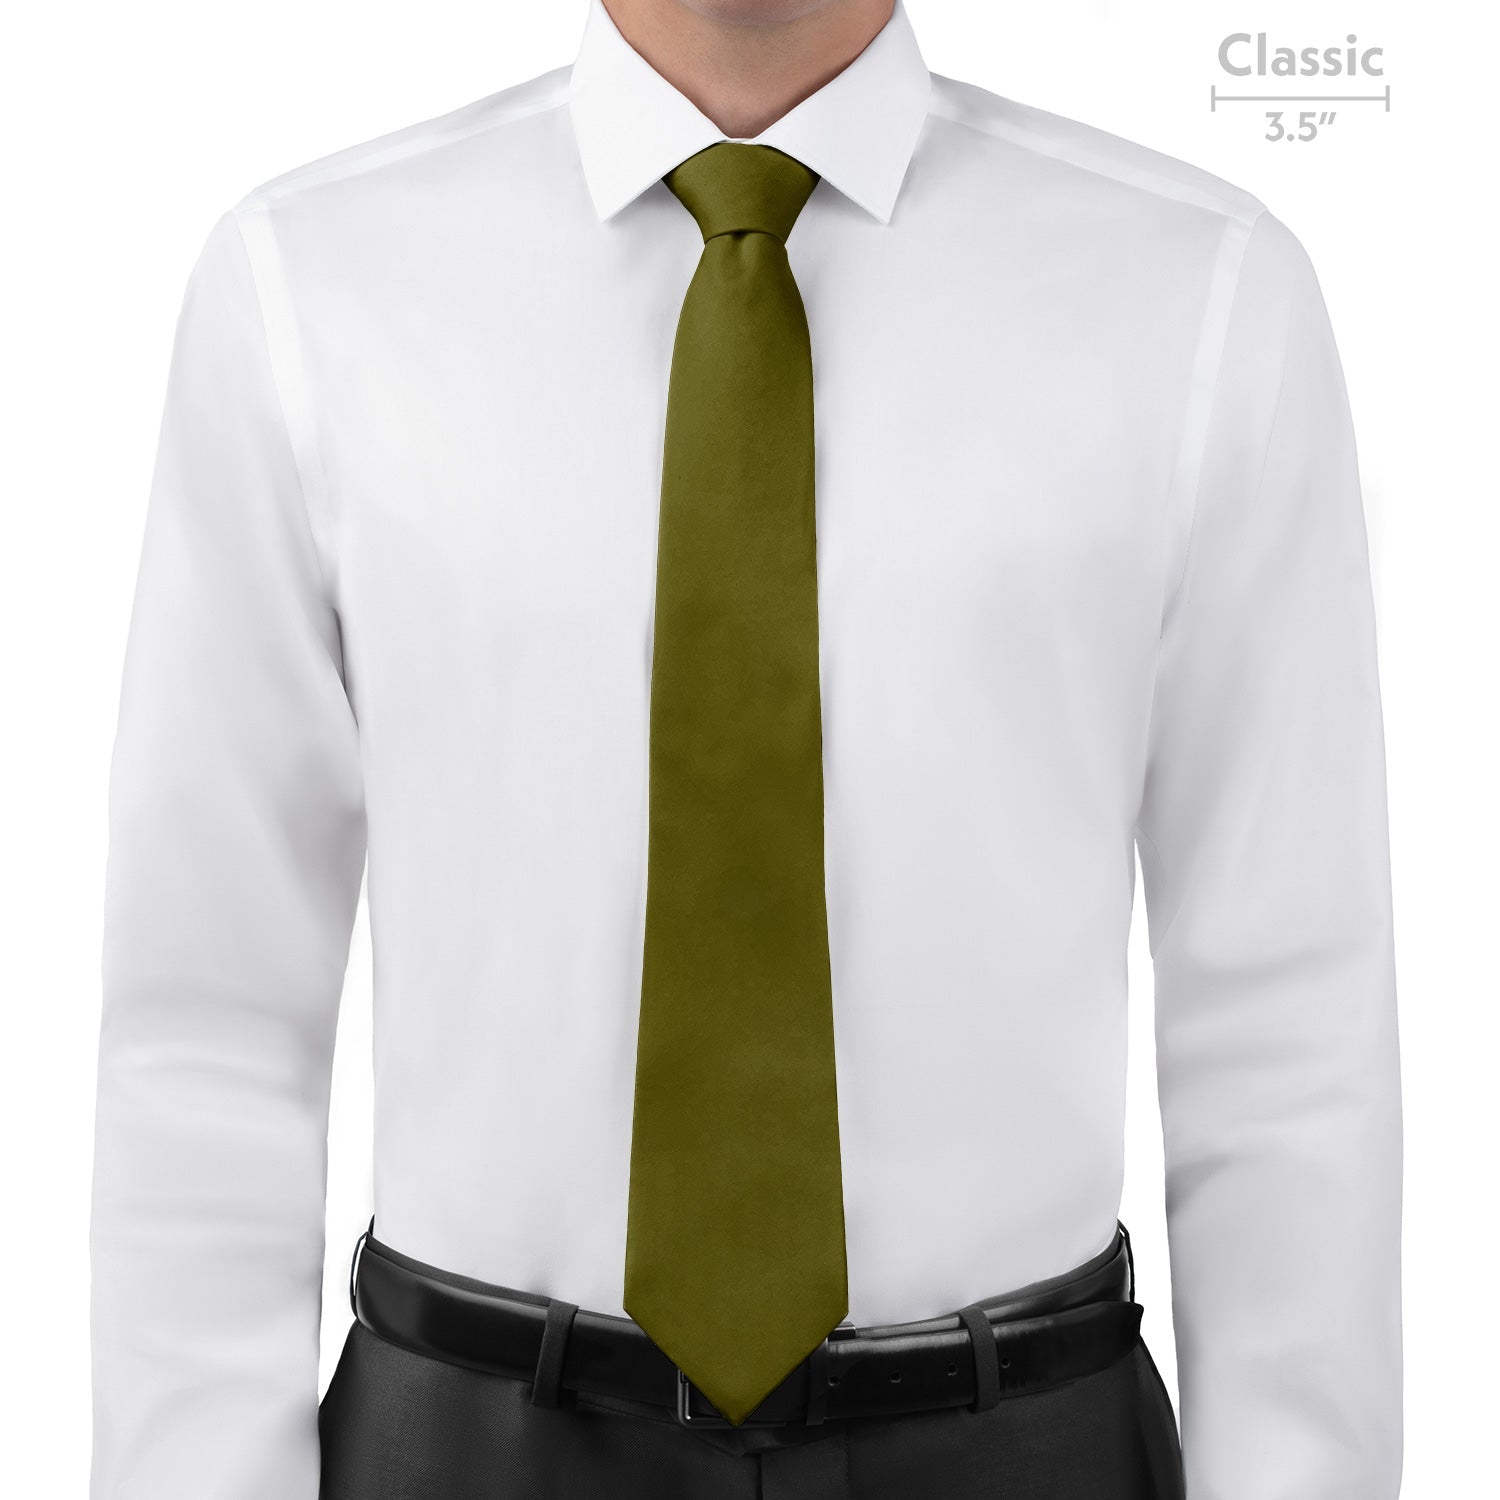 Azazie Martini Necktie - Classic - Knotty Tie Co.